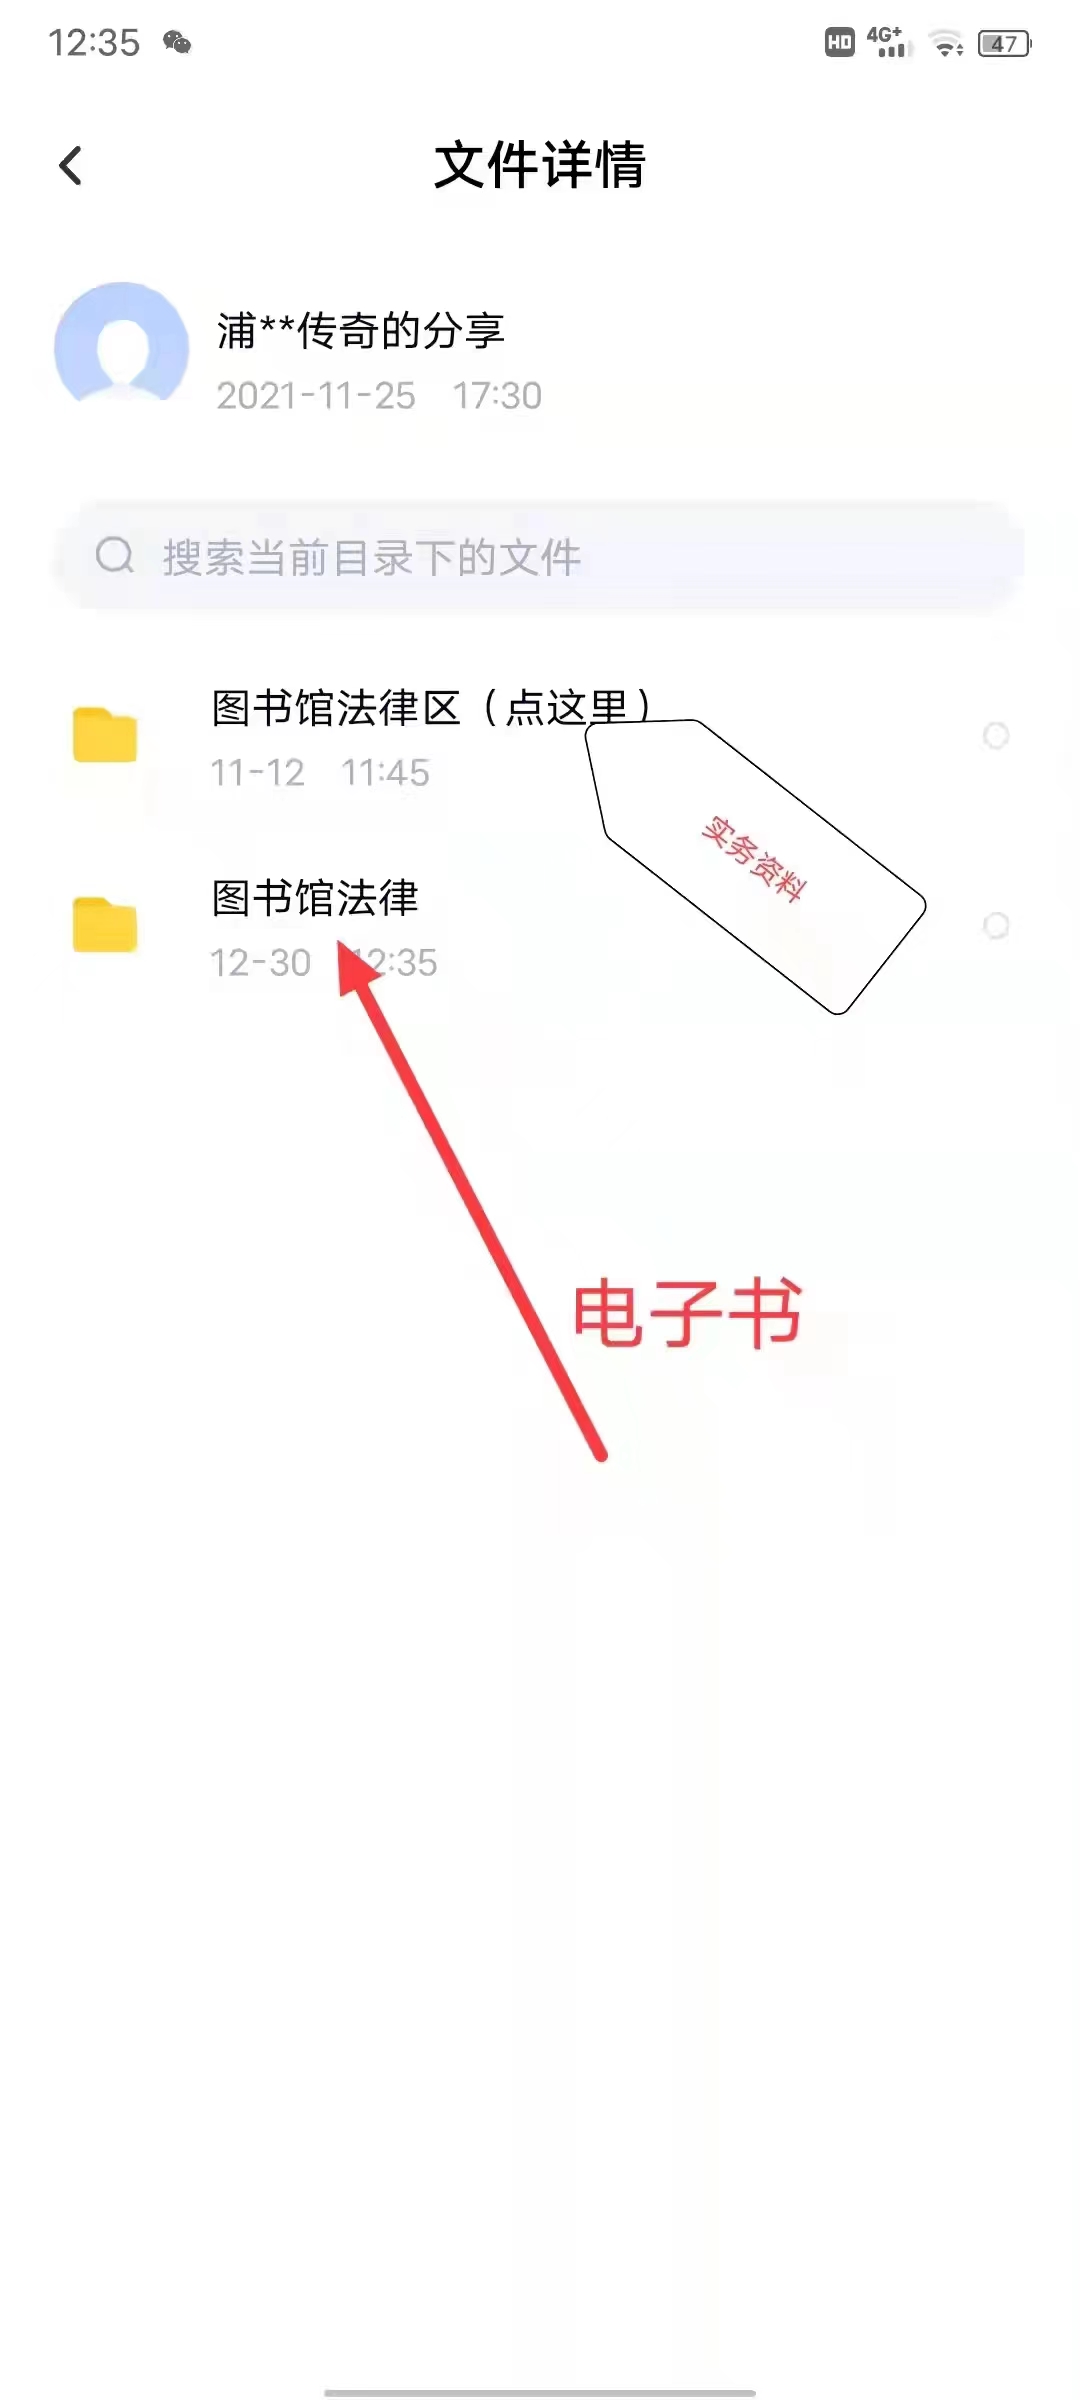 【法律】【PDF】199 刑辩律师办案指引 202103 徐永兴